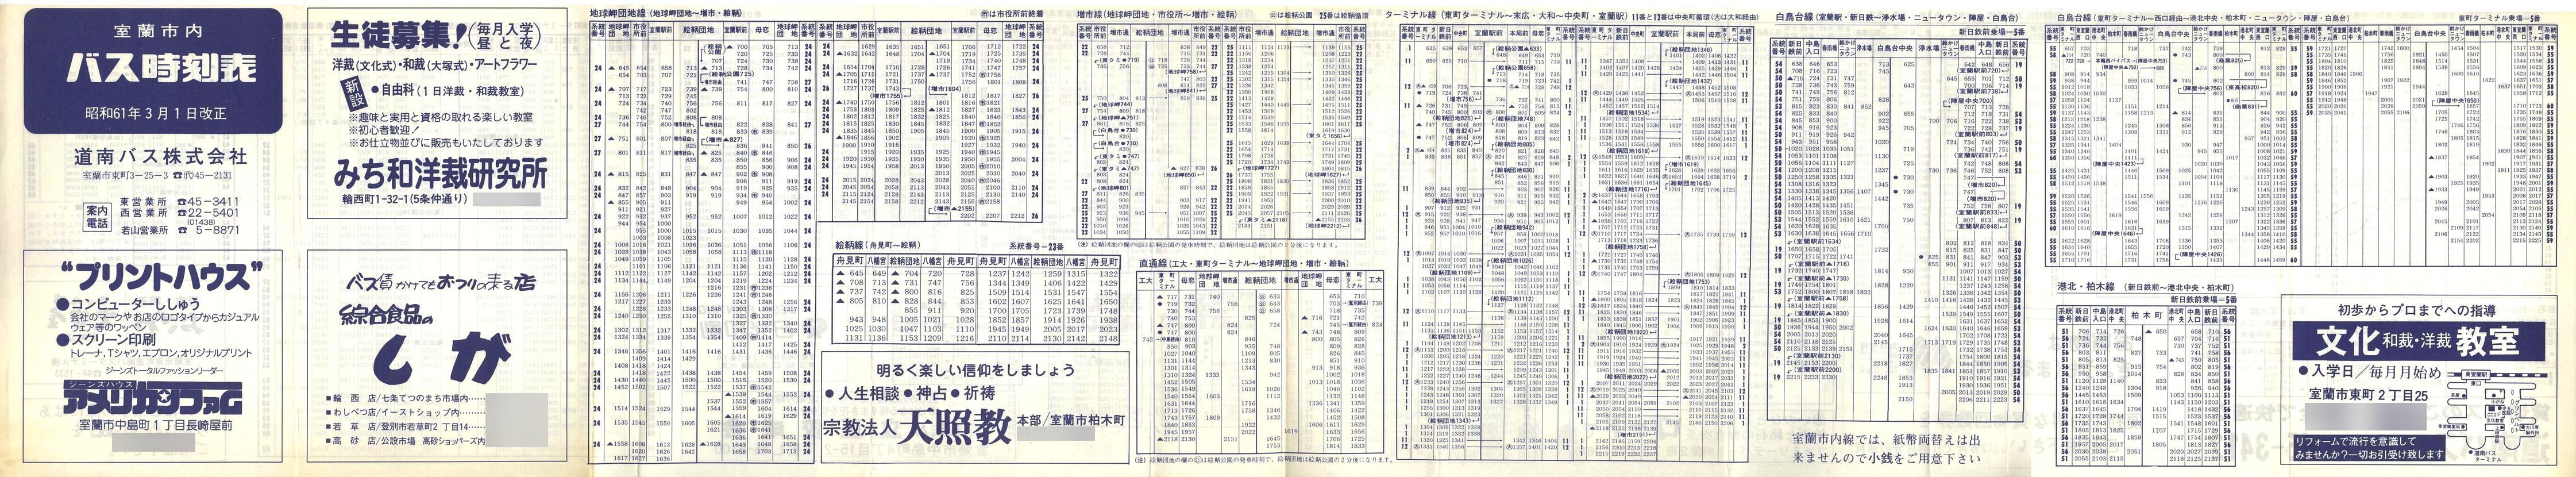 1986-03-01改正_道南バス_室蘭市内線時刻表表面